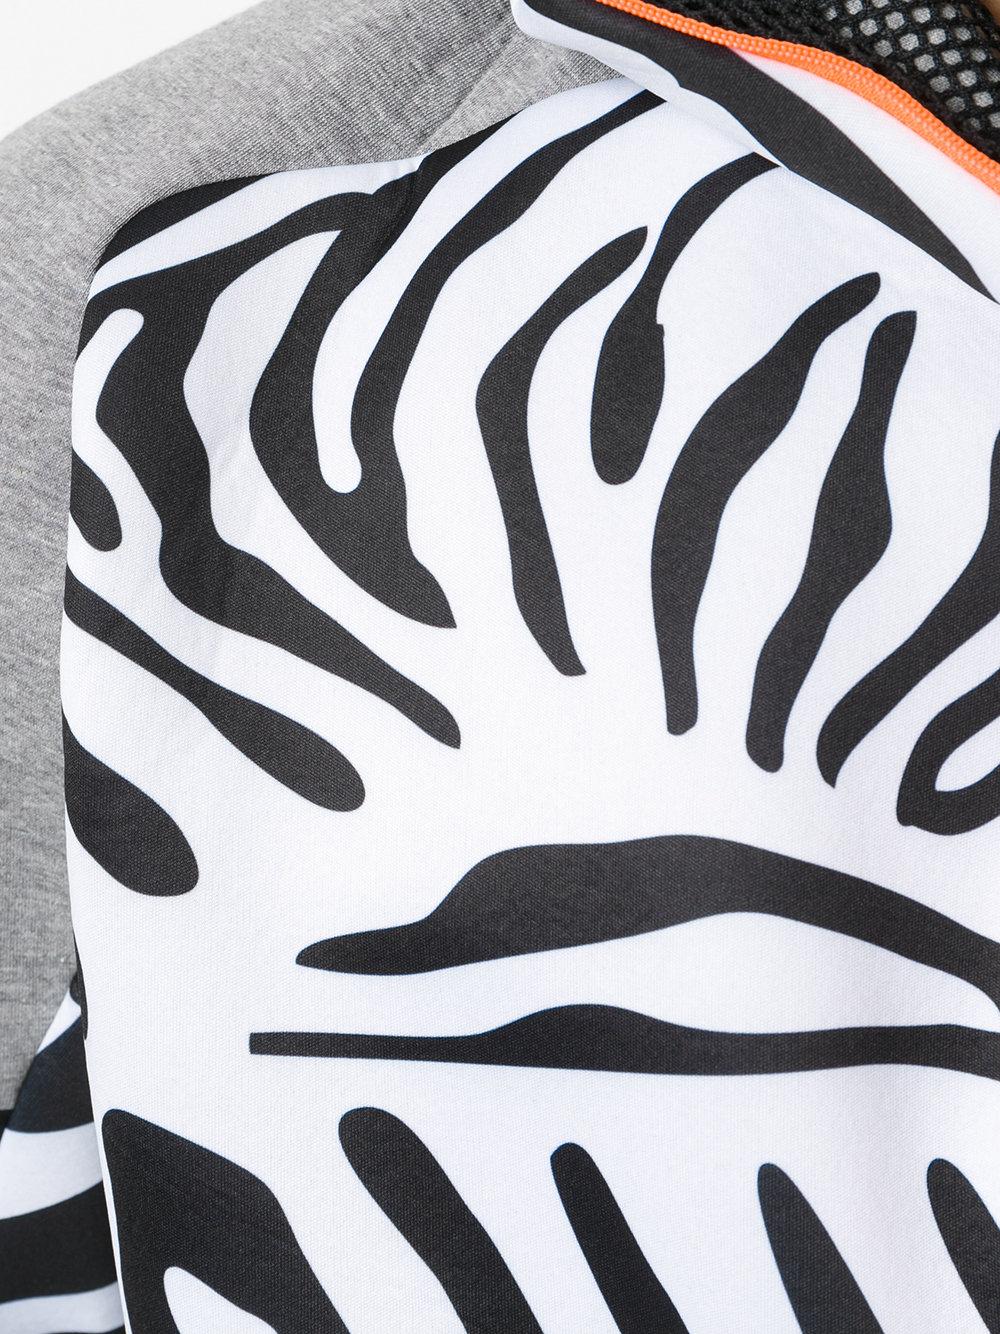 adidas Originals Synthetic Zebra Print Zip Hoodie in Black for Men - Lyst